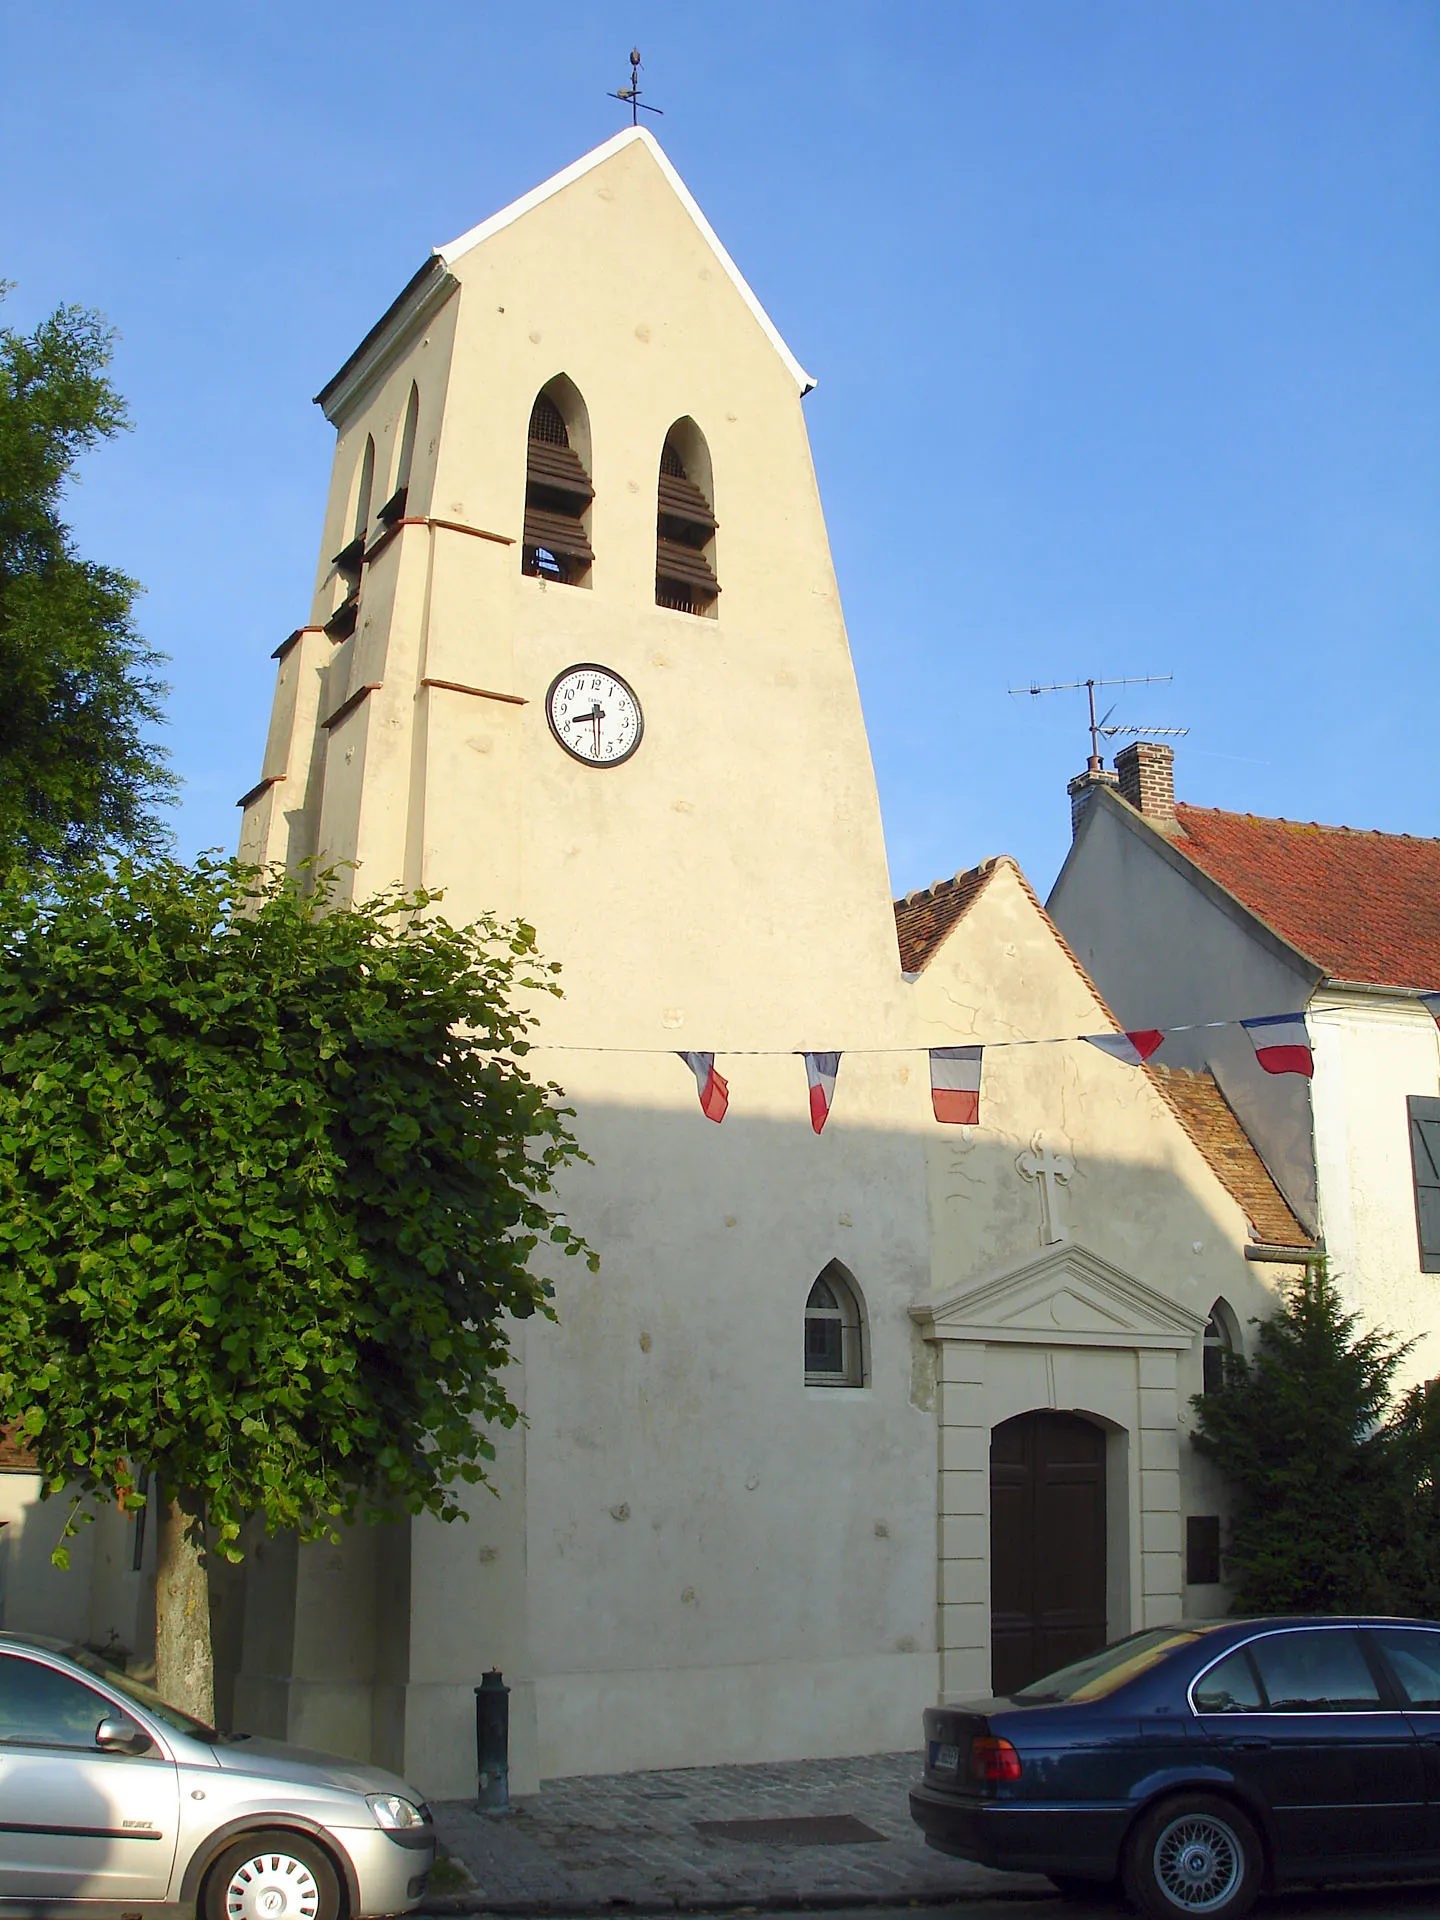 Photo showing: L'église Notre-Dame-de-la-Nativité de Villaines-sous-Bois, Val-d'Oise, France.